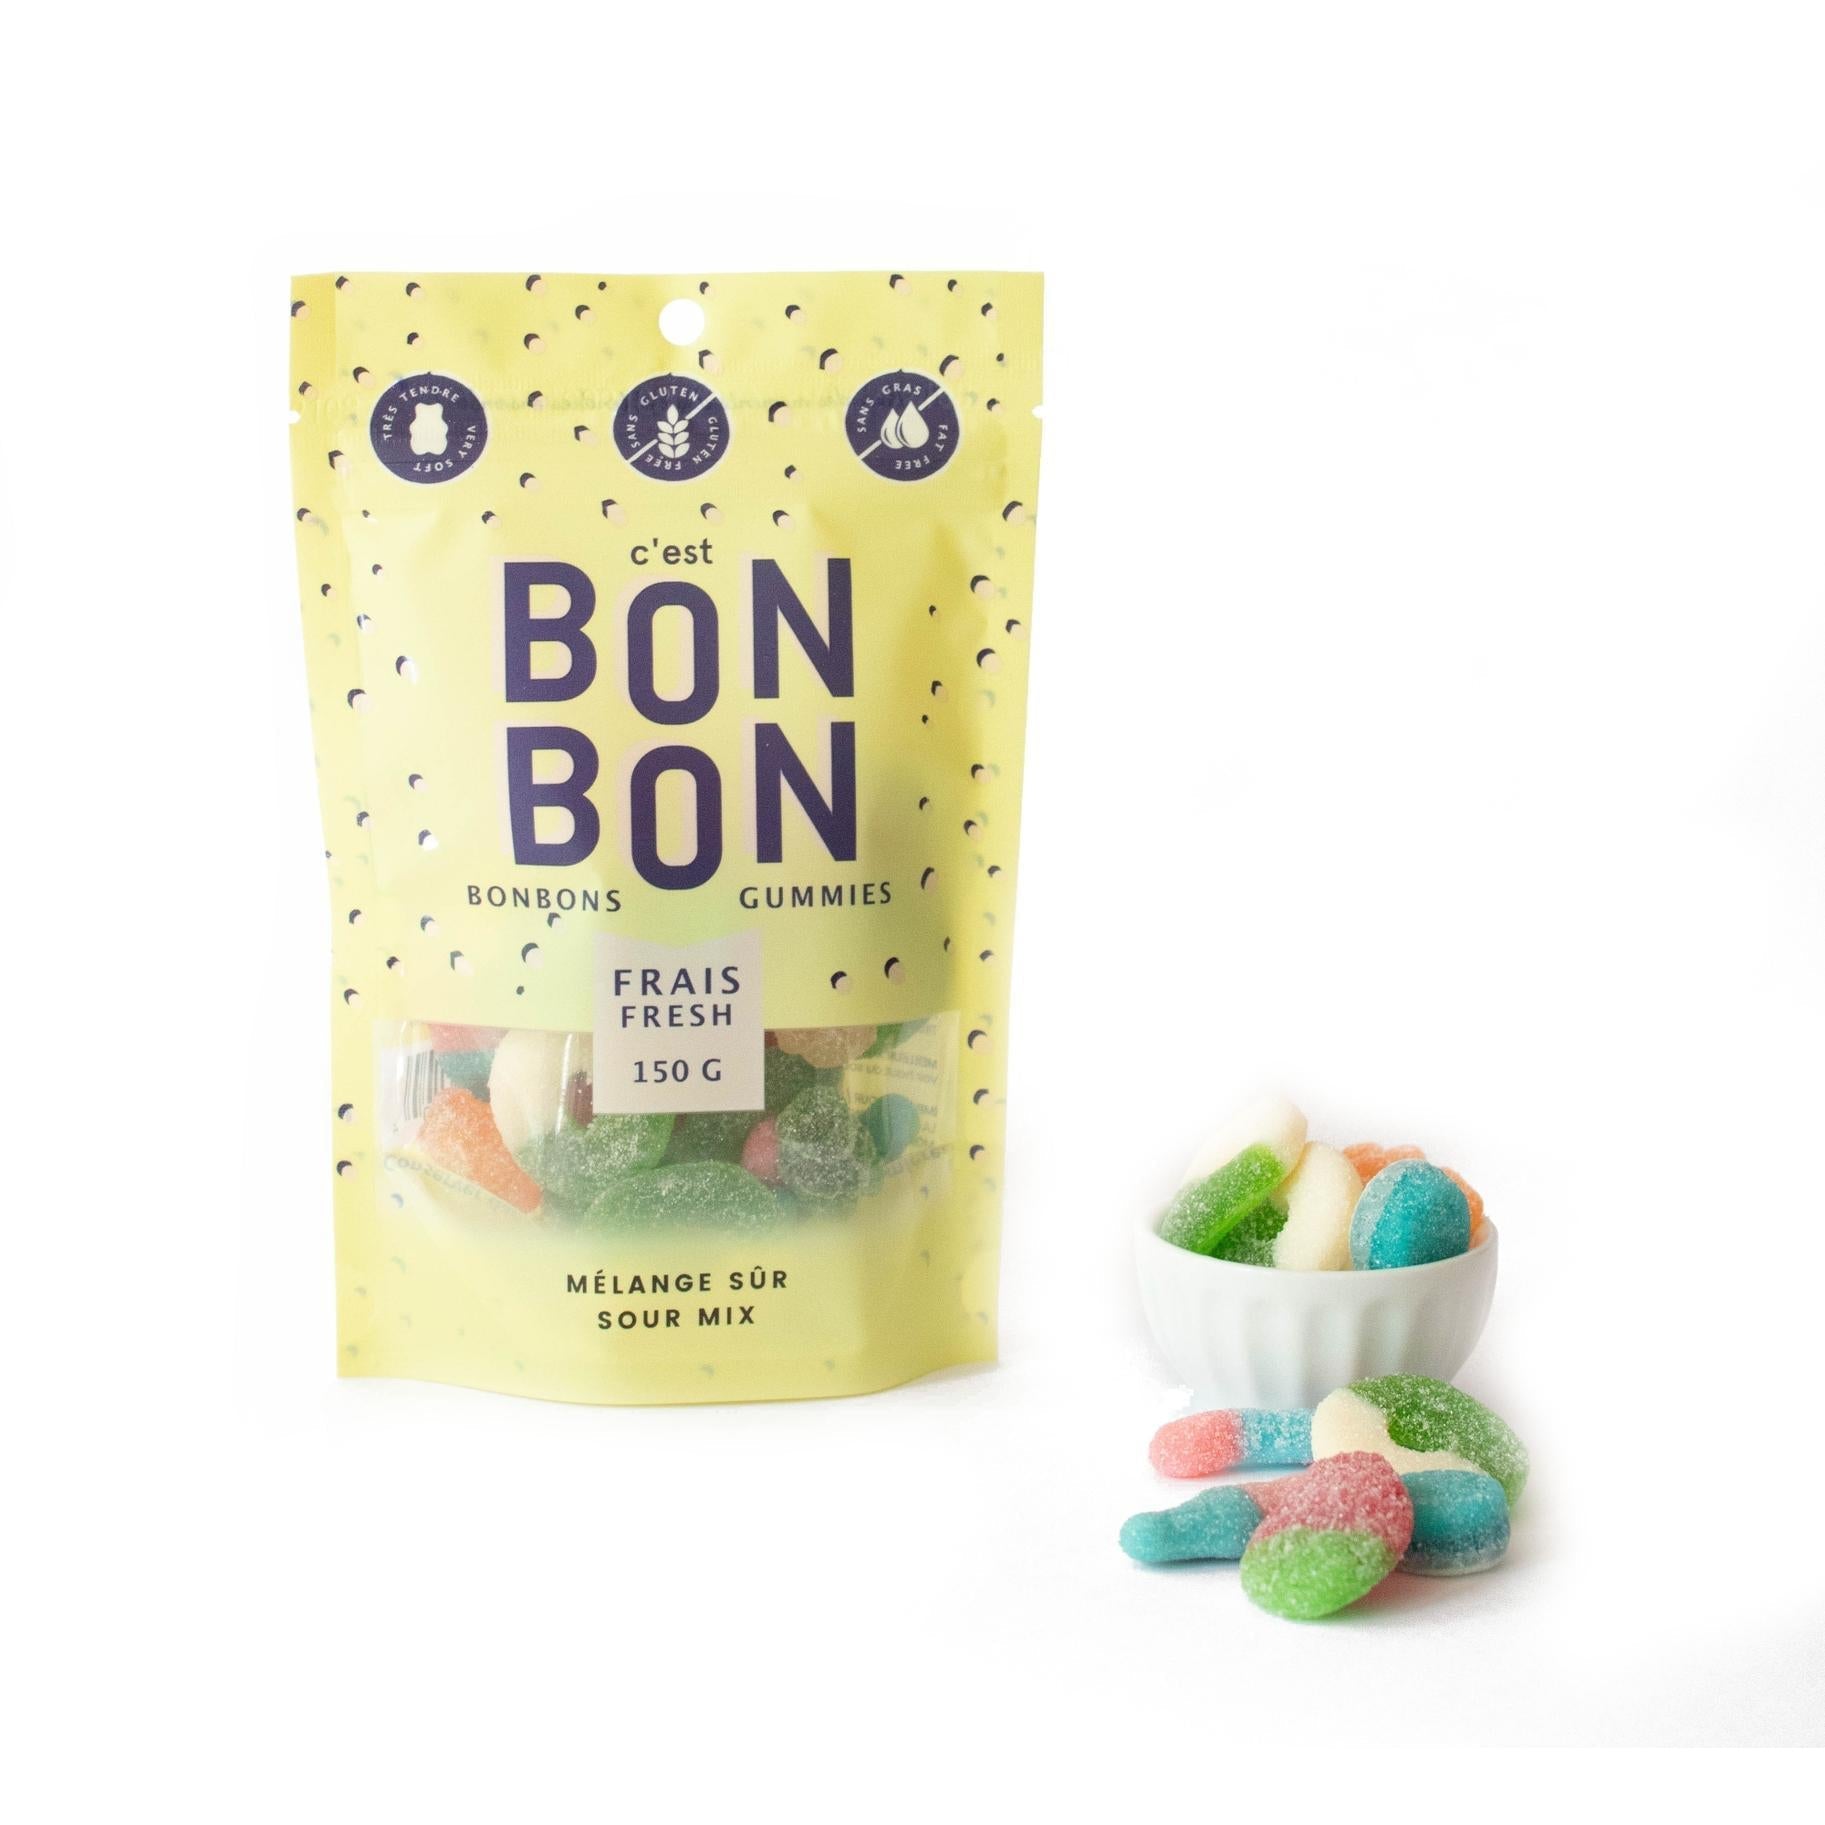 La Boite A Bonbons - 'Sour Mix' Bonbons Gummies (150G)